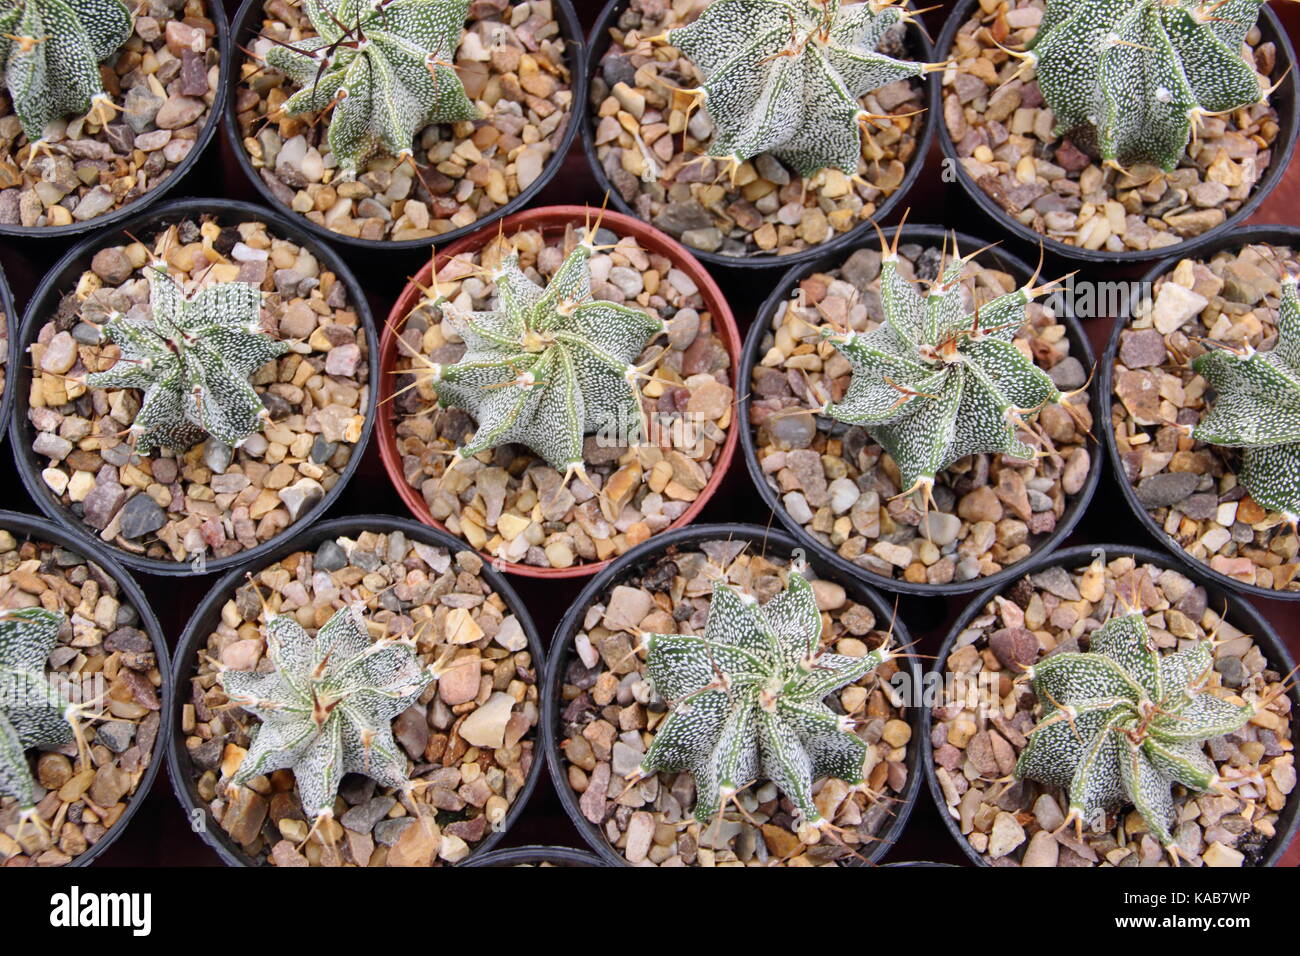 Barrel cactus plants (ferocactus glaucescens) thiriving in small pots in a warm, sunny indoor spot, UK Stock Photo